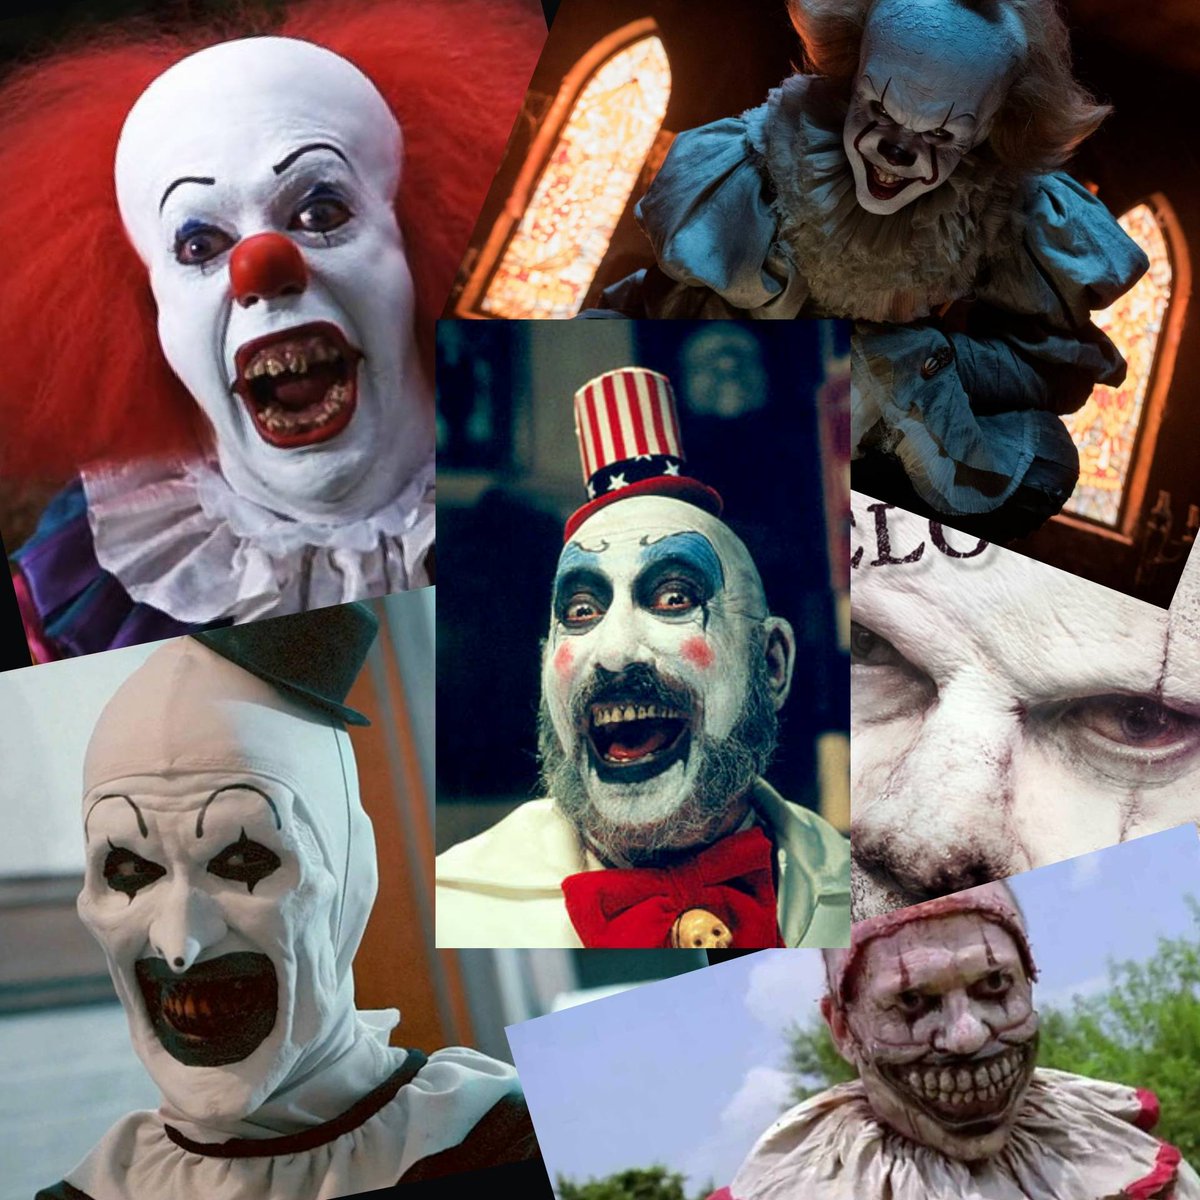 Scariest clown in a #horrormovie or series?
.
.
.
.
.
#it #pennywise #clown #twisty #art #arttheclown #captainspaulding #clowns #scaryclowns #scaryclown #spooky #scary #terrifying #spookyclowns #spookyclown #creepy #creepyclowns #creepyclown #WeAreHorror #TheSlasherApp